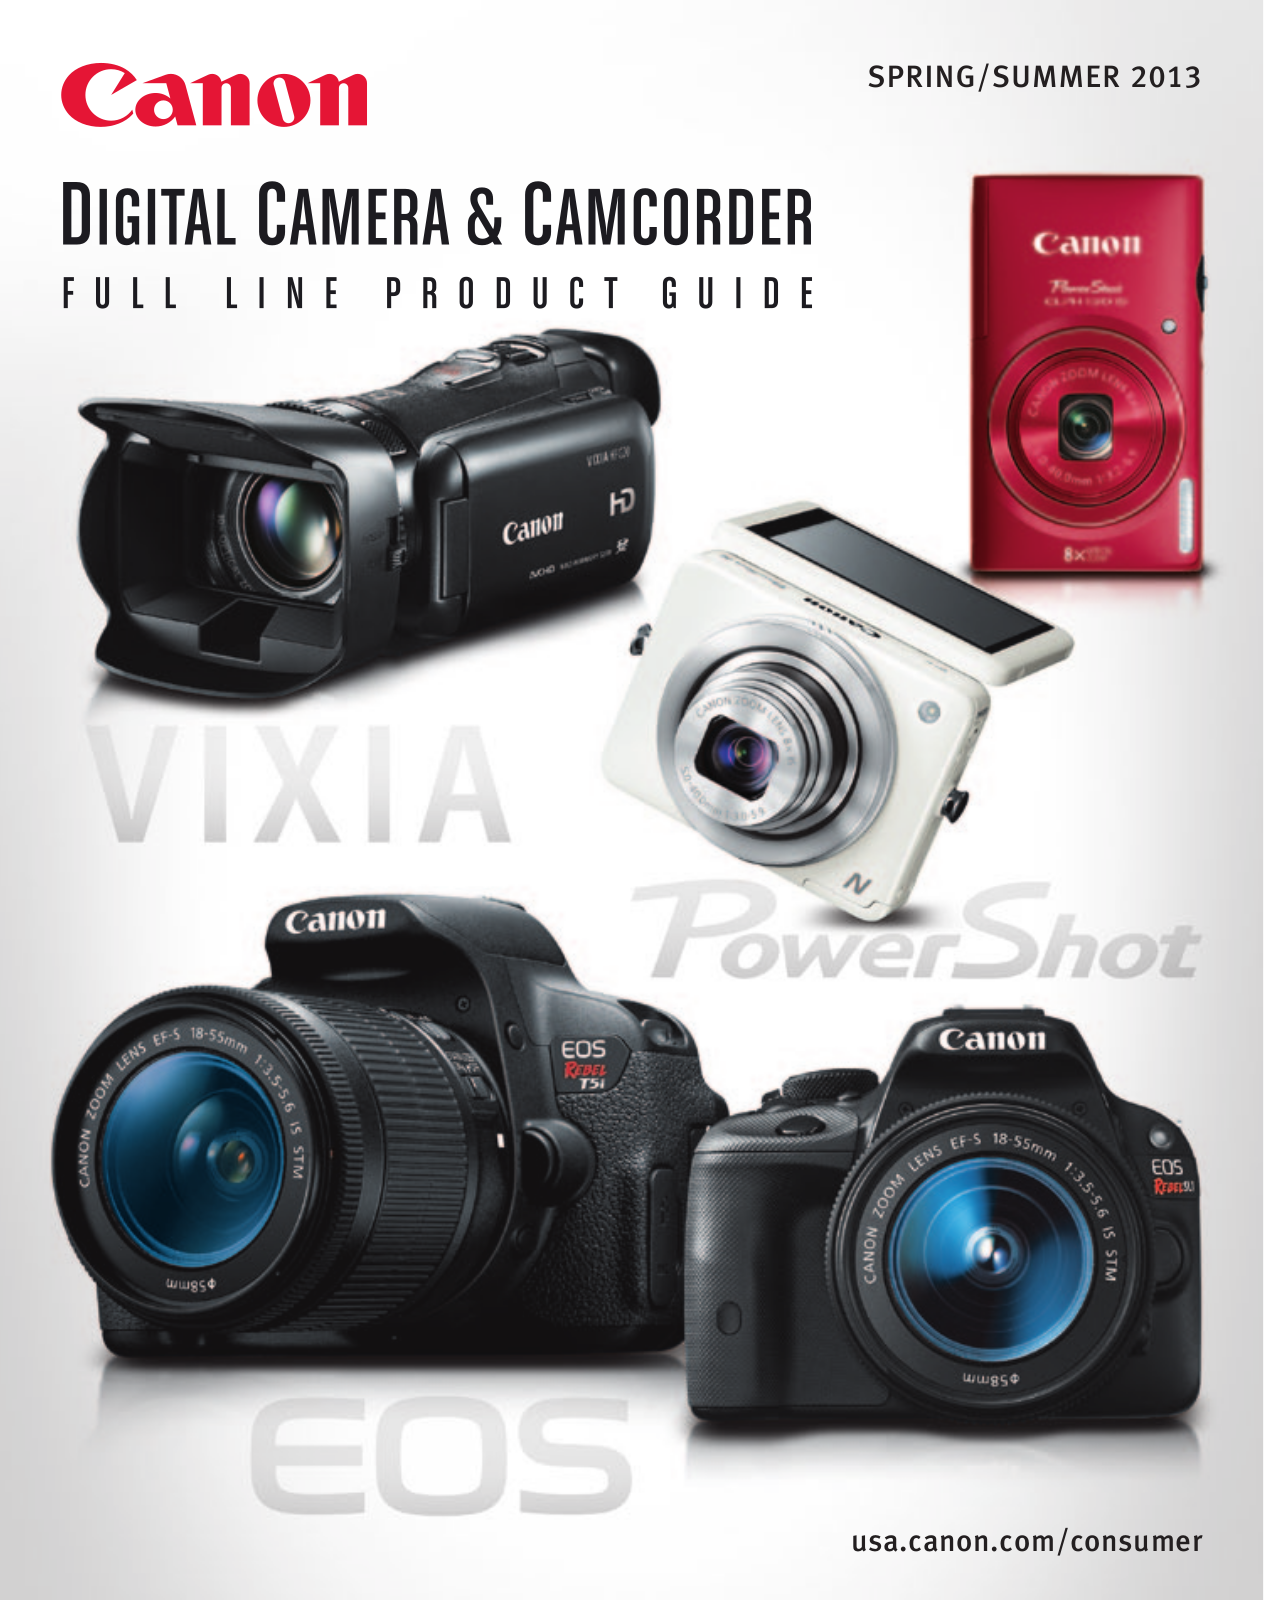 Canon EOS 5D MARK III, VIXIA HF R300, EOS M EF-M 22MM STM, EOS REBEL SL1 18-55MM IS STM, POWERSHOT G1 X Manual